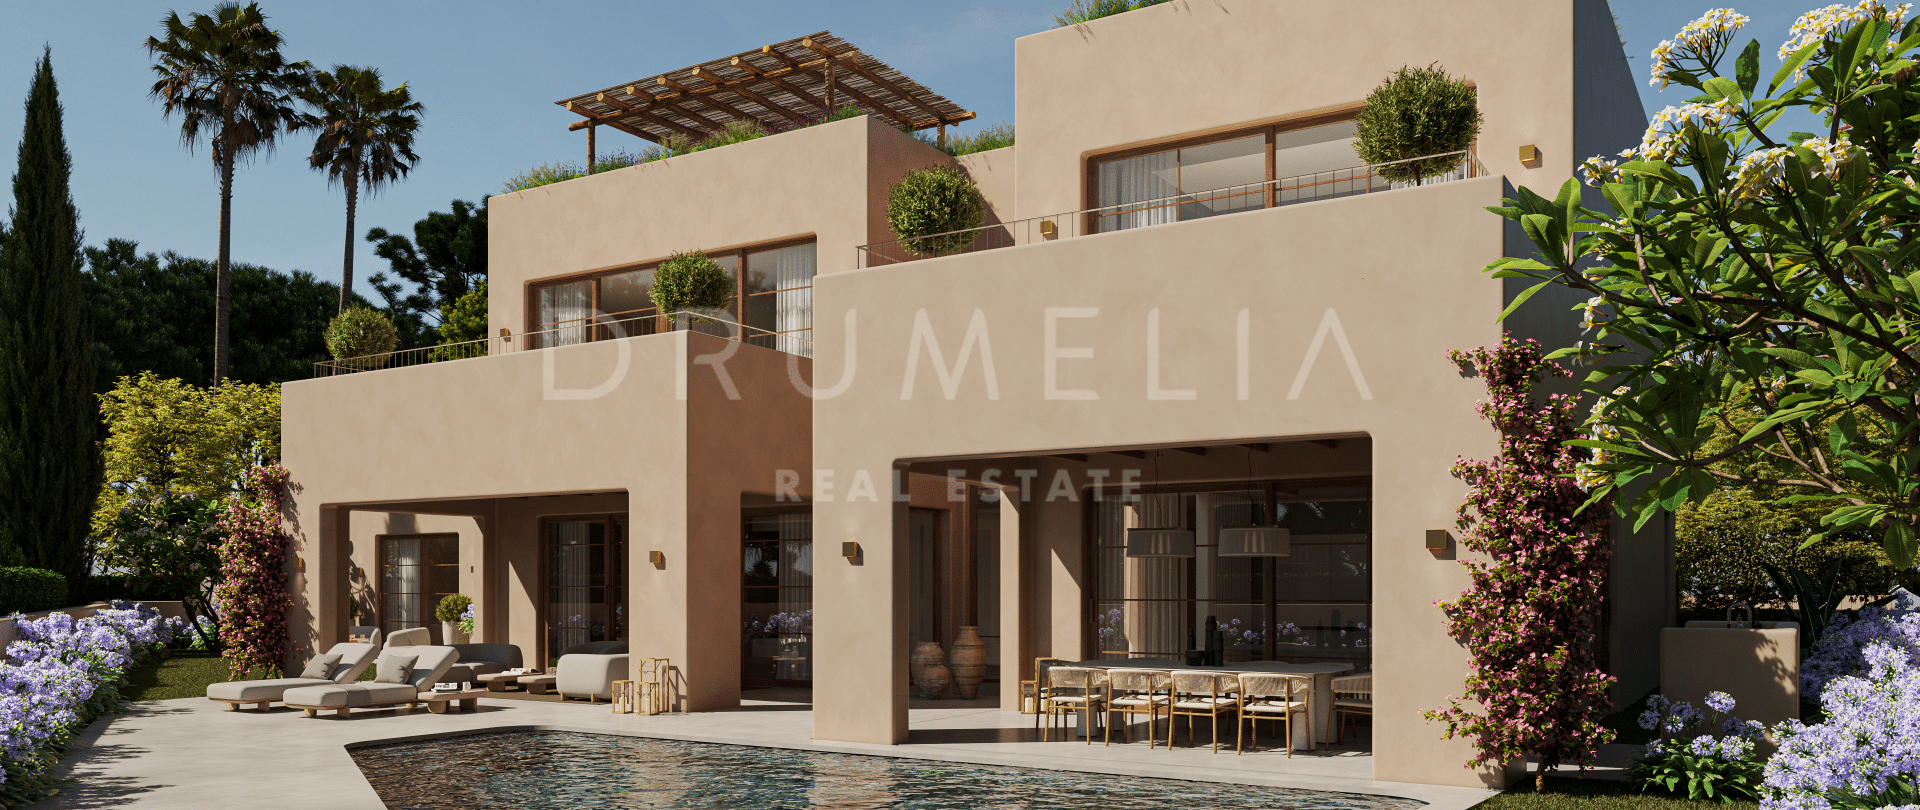 Uitzonderlijk perceel en op maat gemaakt architectonisch uniek villaproject in Casa Blanca, Marbella